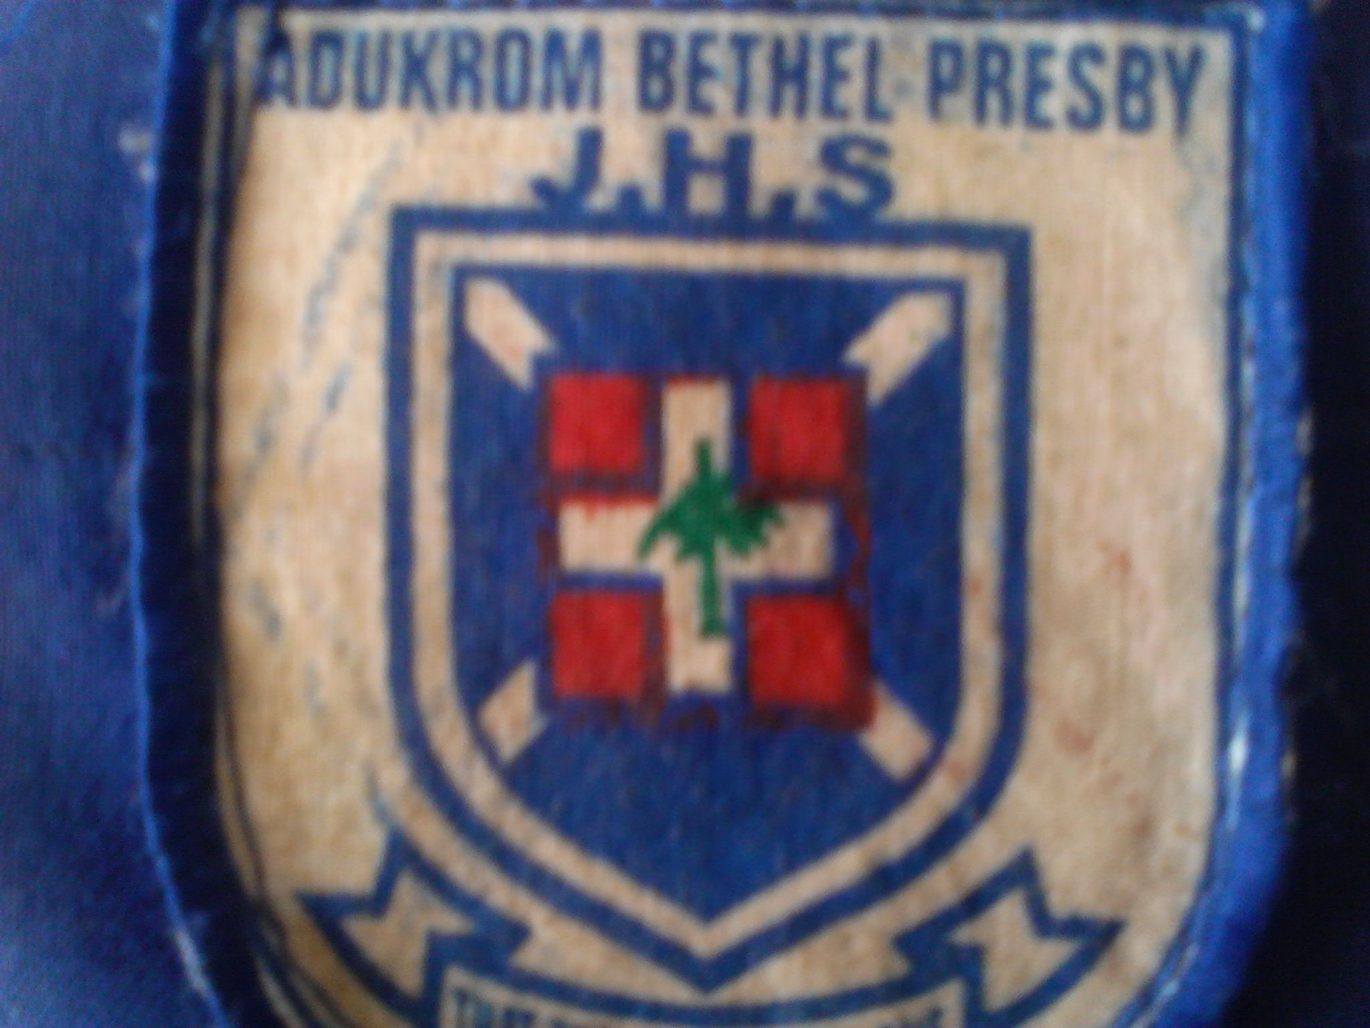 BETHEL Presby Junior High School